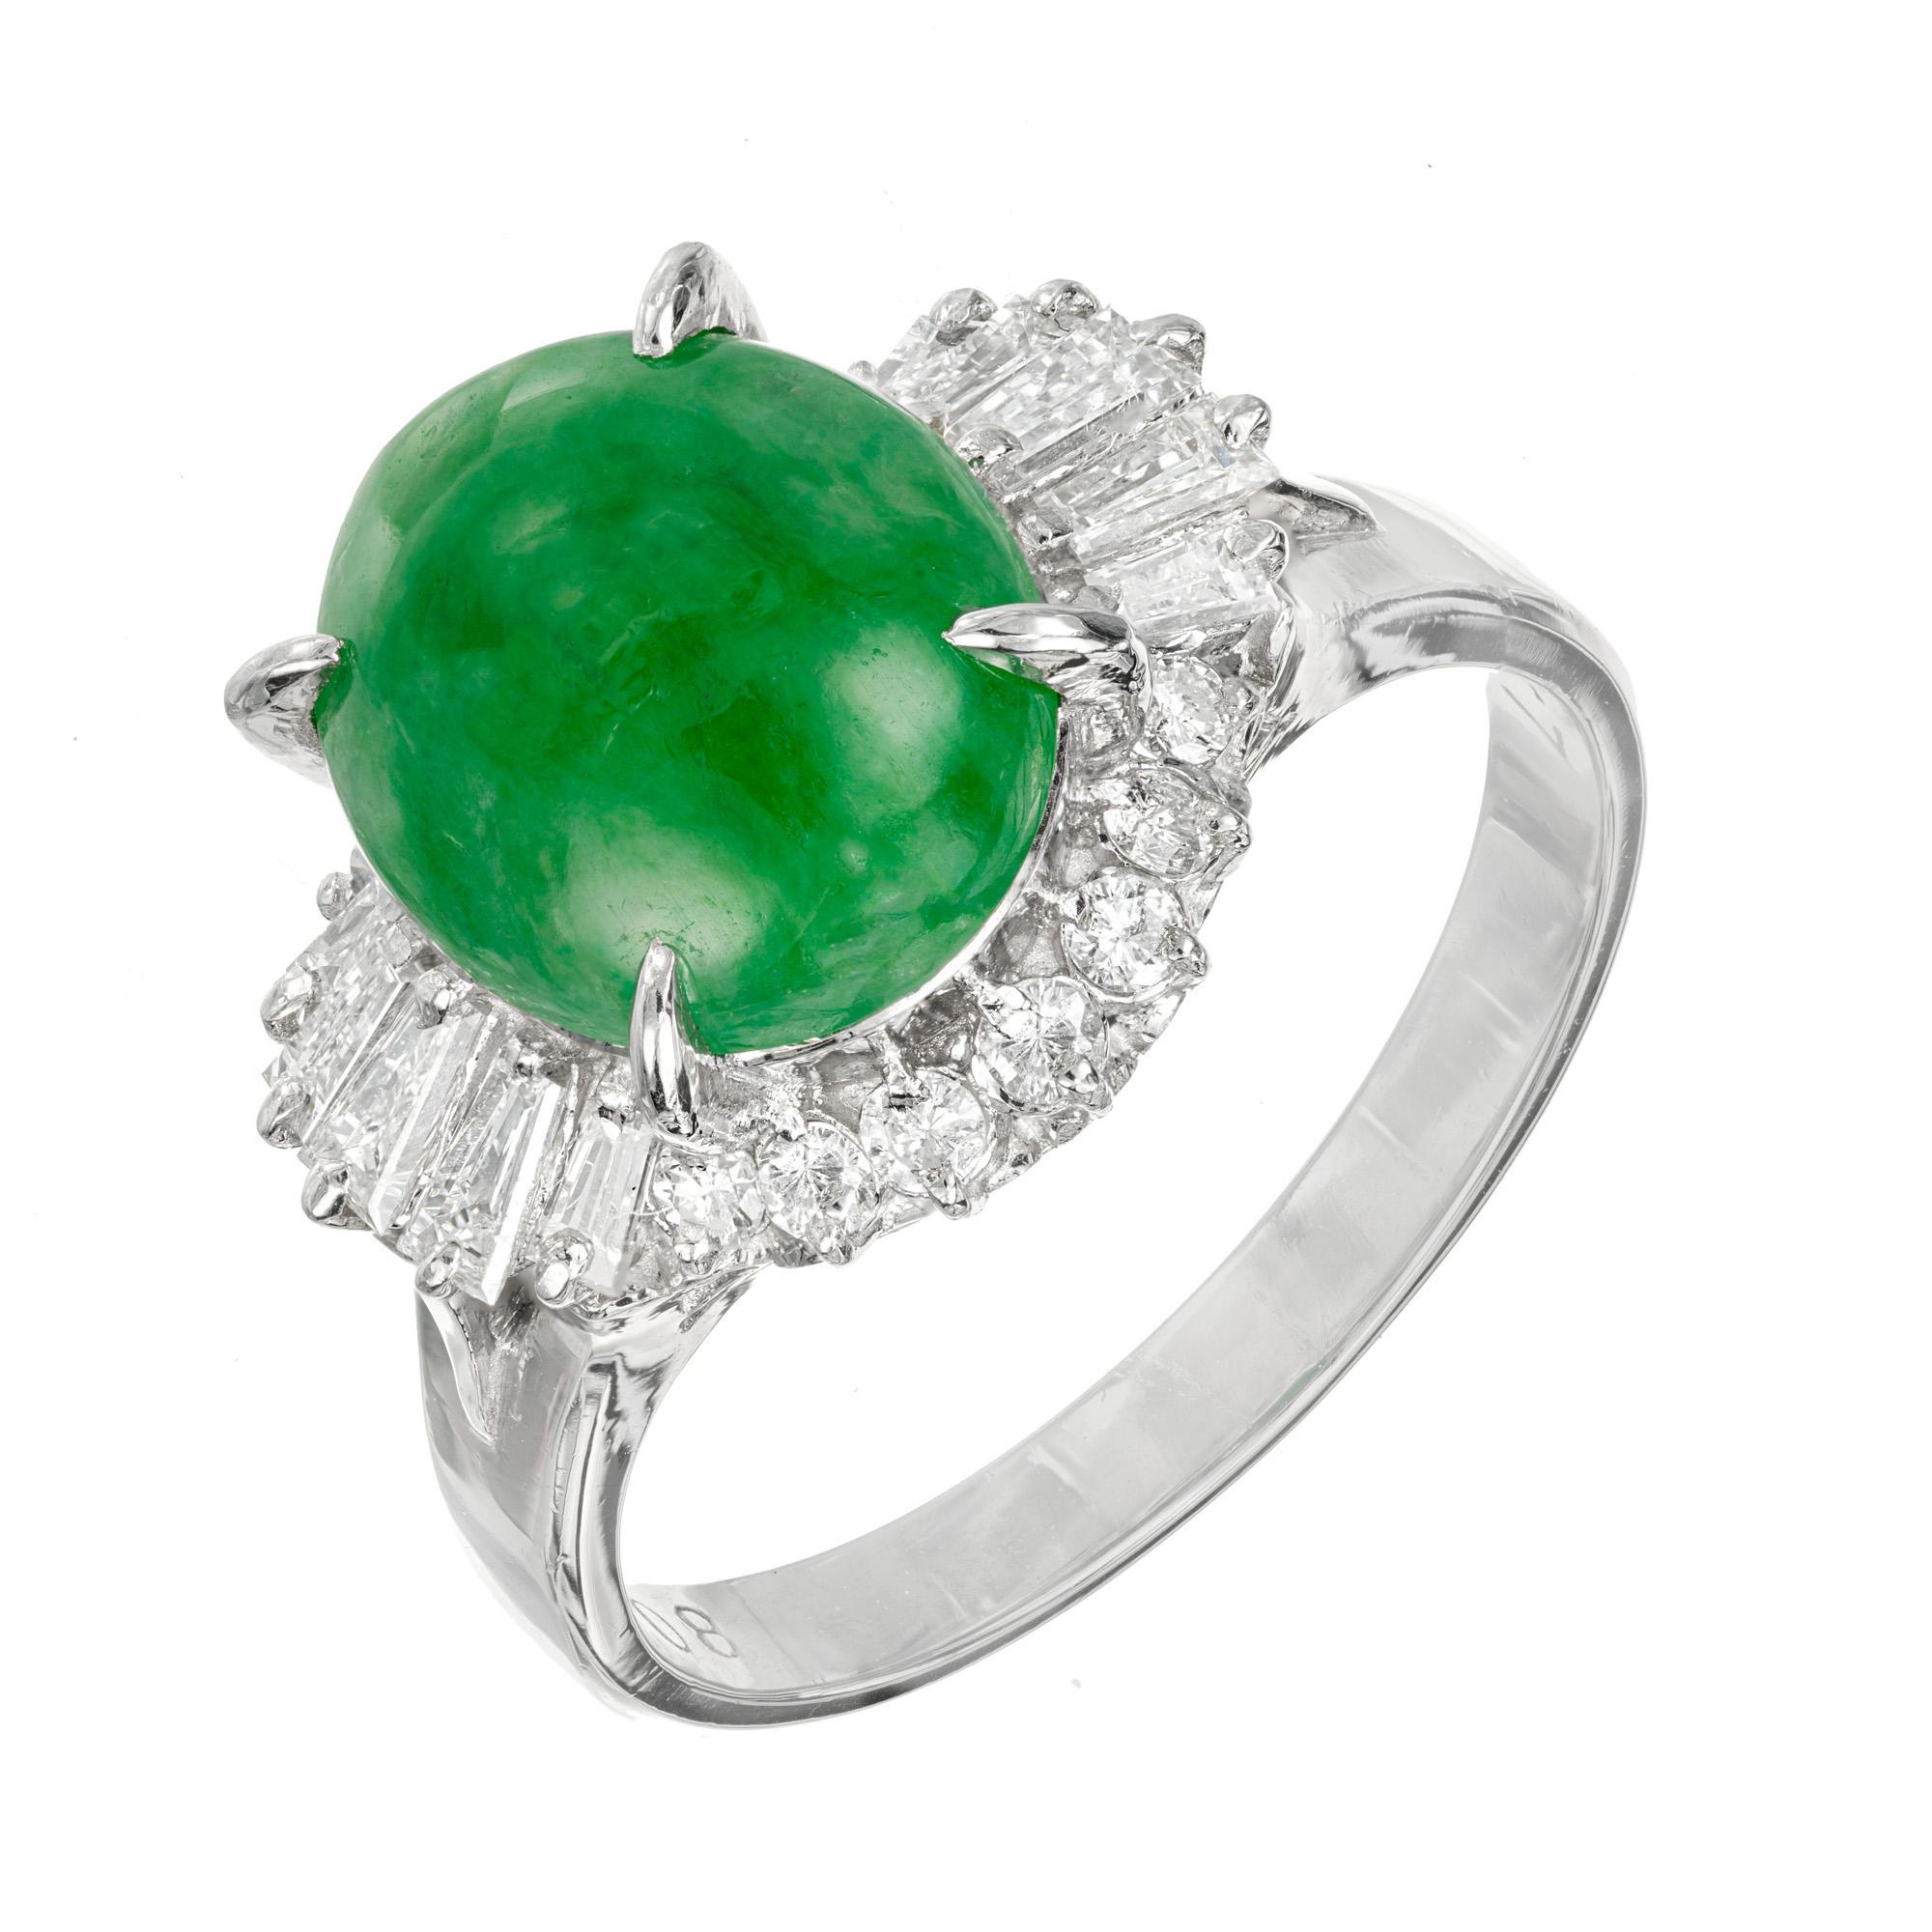 Jadeite Bague en jade et diamant. Pierre centrale ovale en jade naturel, certifiée GIA, dans une monture ballerine en platine avec un halo de diamants ronds et baguettes. Le jade est certifié naturel, aucune indication d'imprégnations. 

1 jade